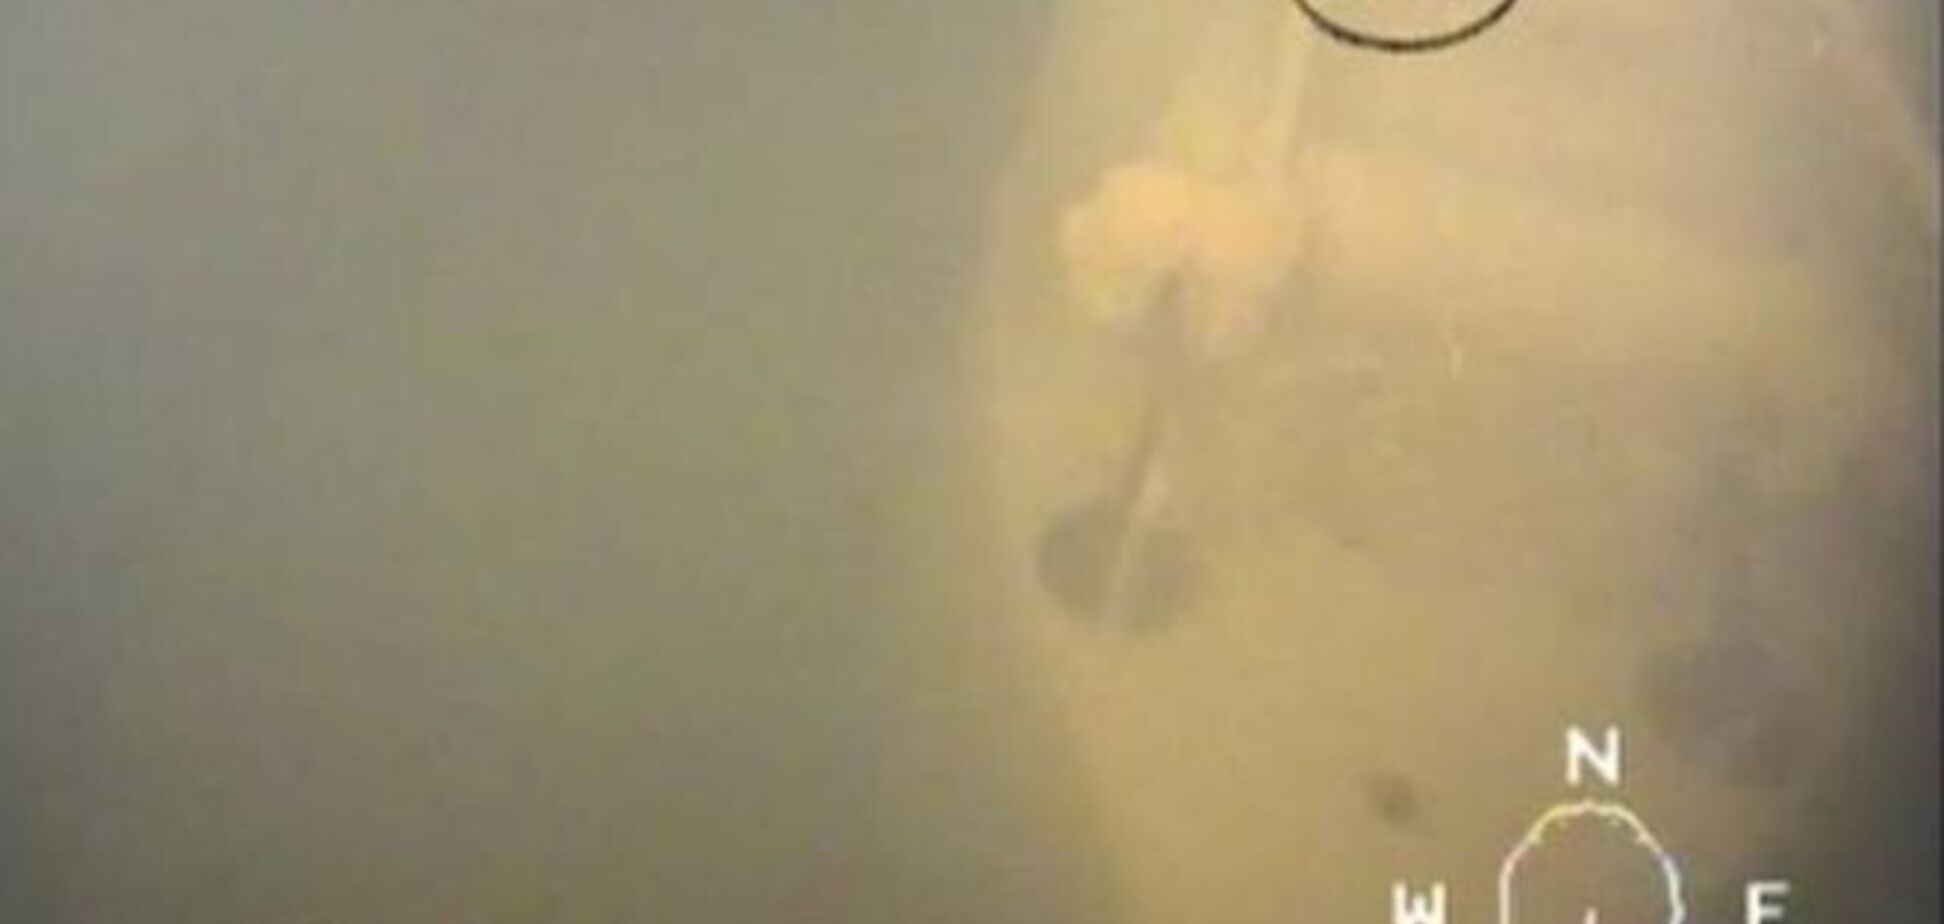 У берегов Швеции обнаружена затонувшая российская подводная лодка: опубликованы фото и видео